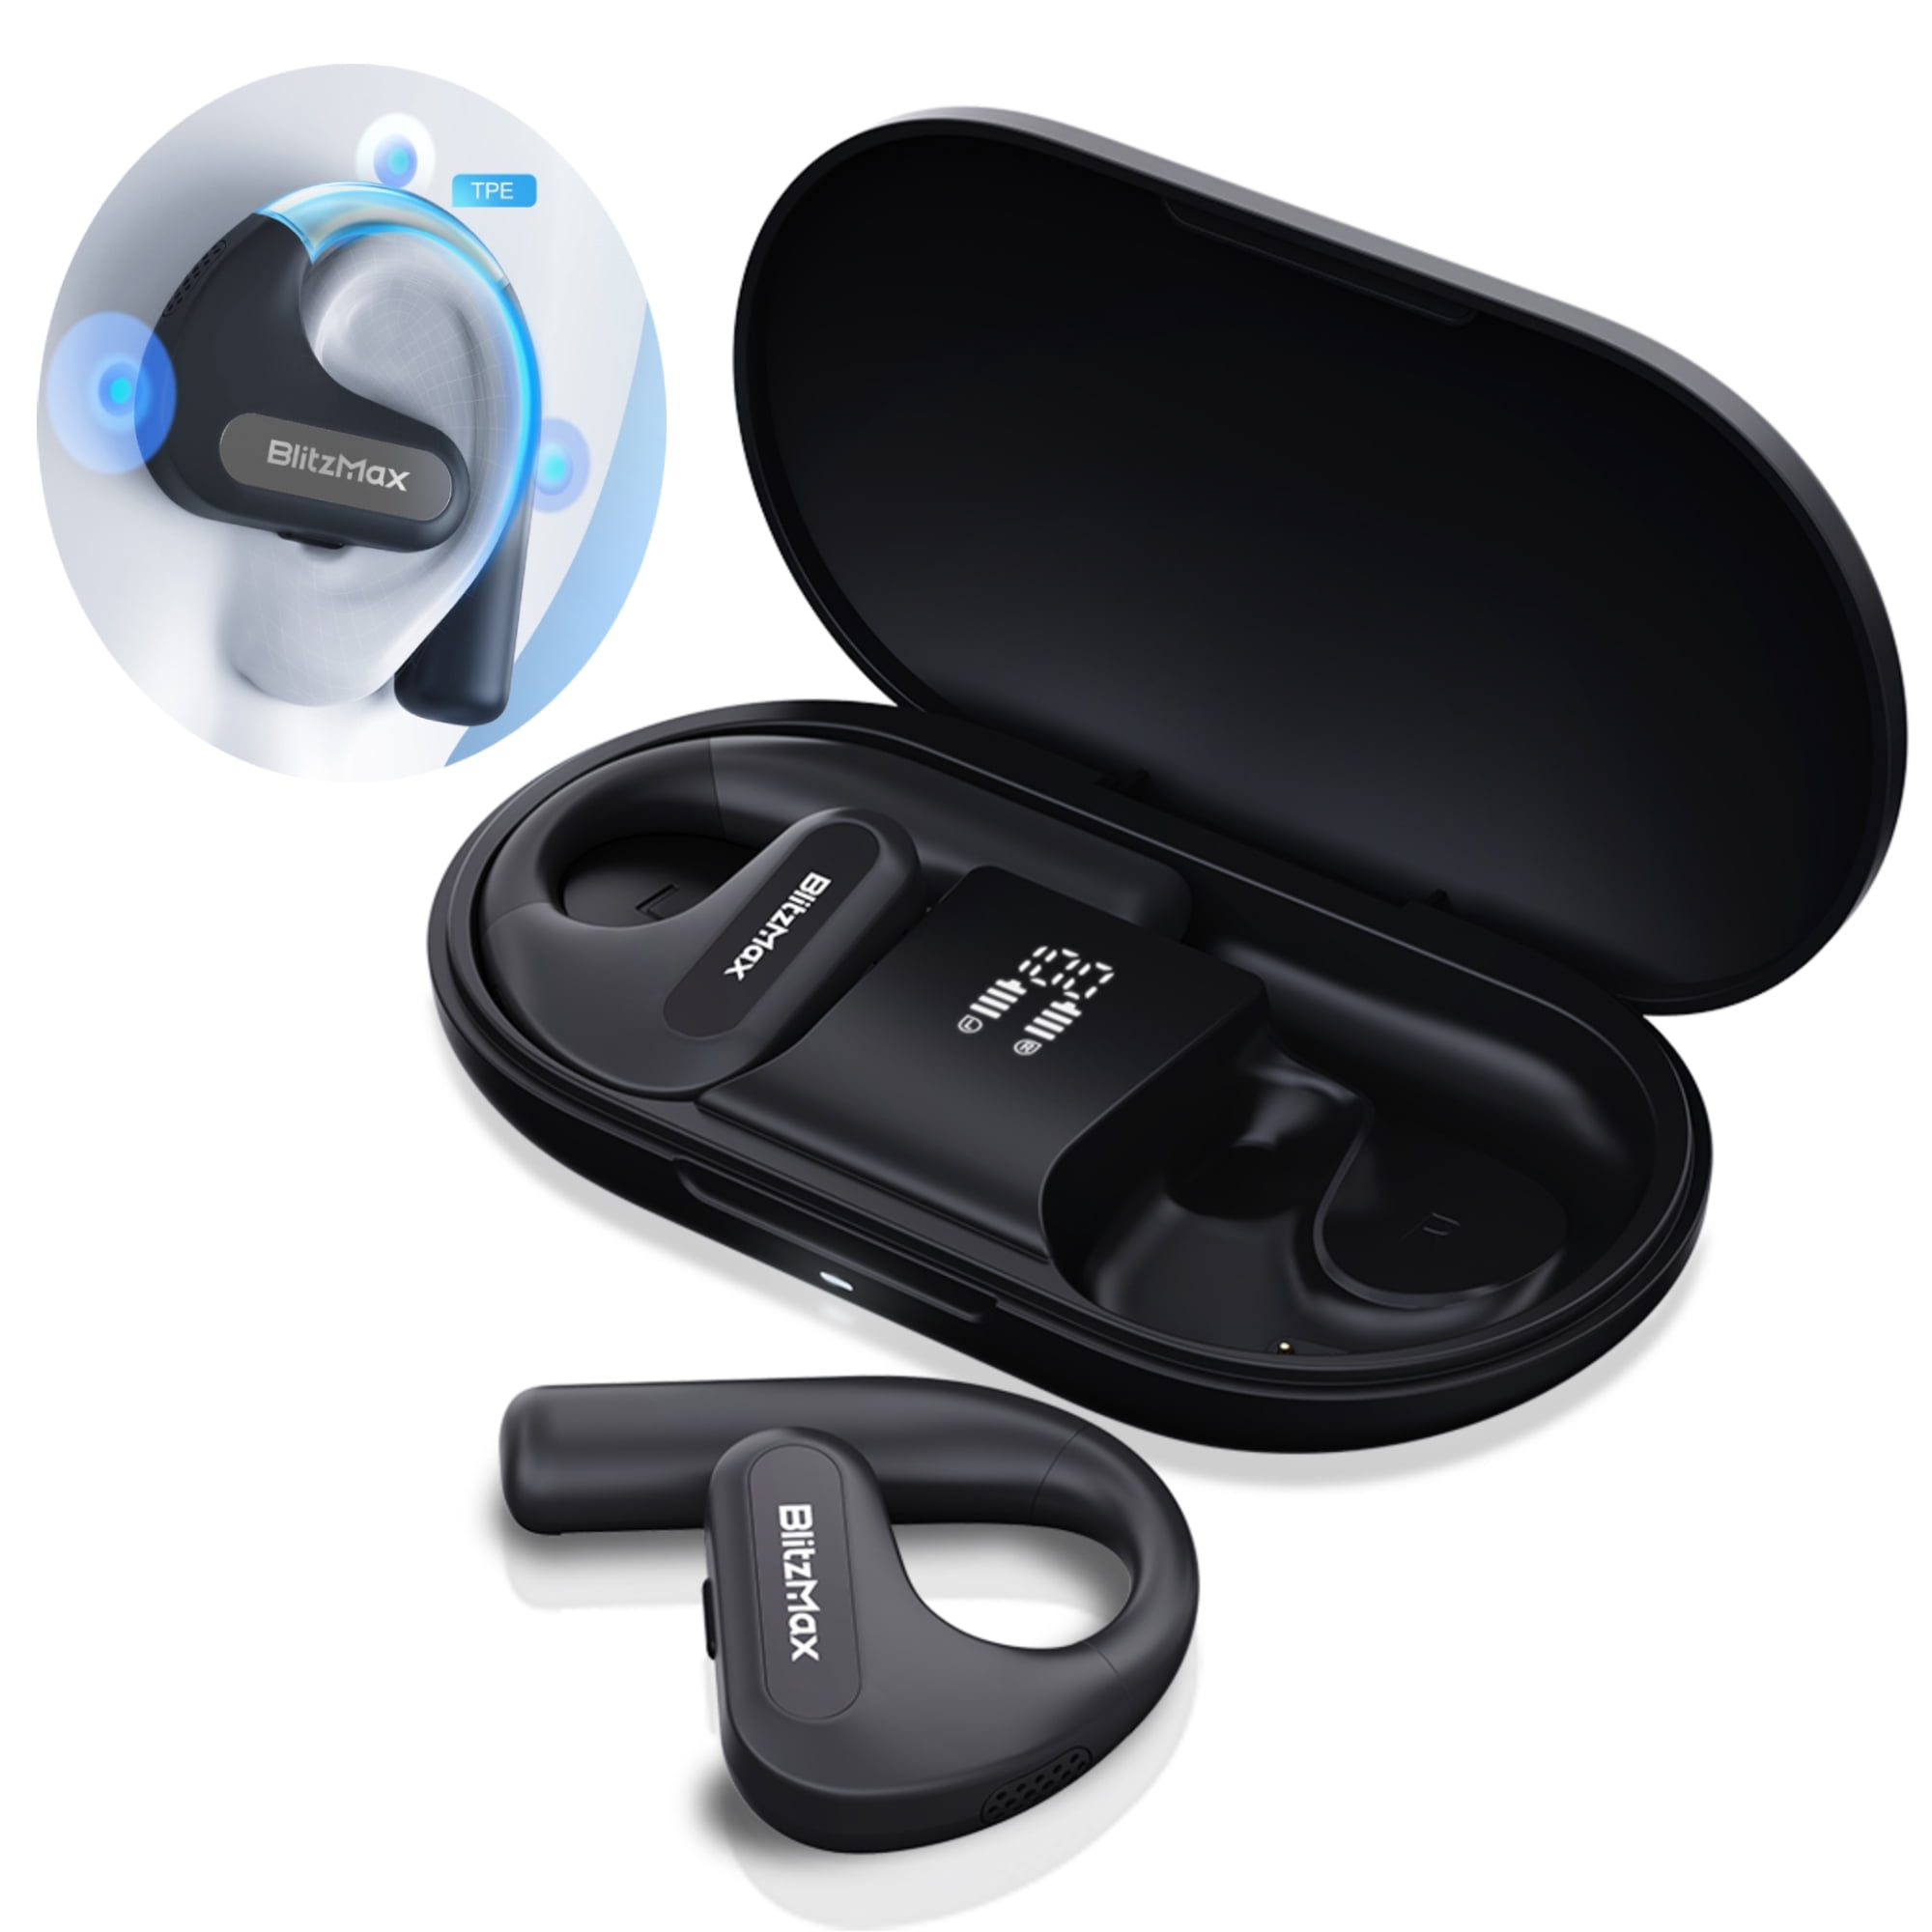 Ipx8 Waterproof Swimming Tws Digital Display Earbuds Open Ear Wireless